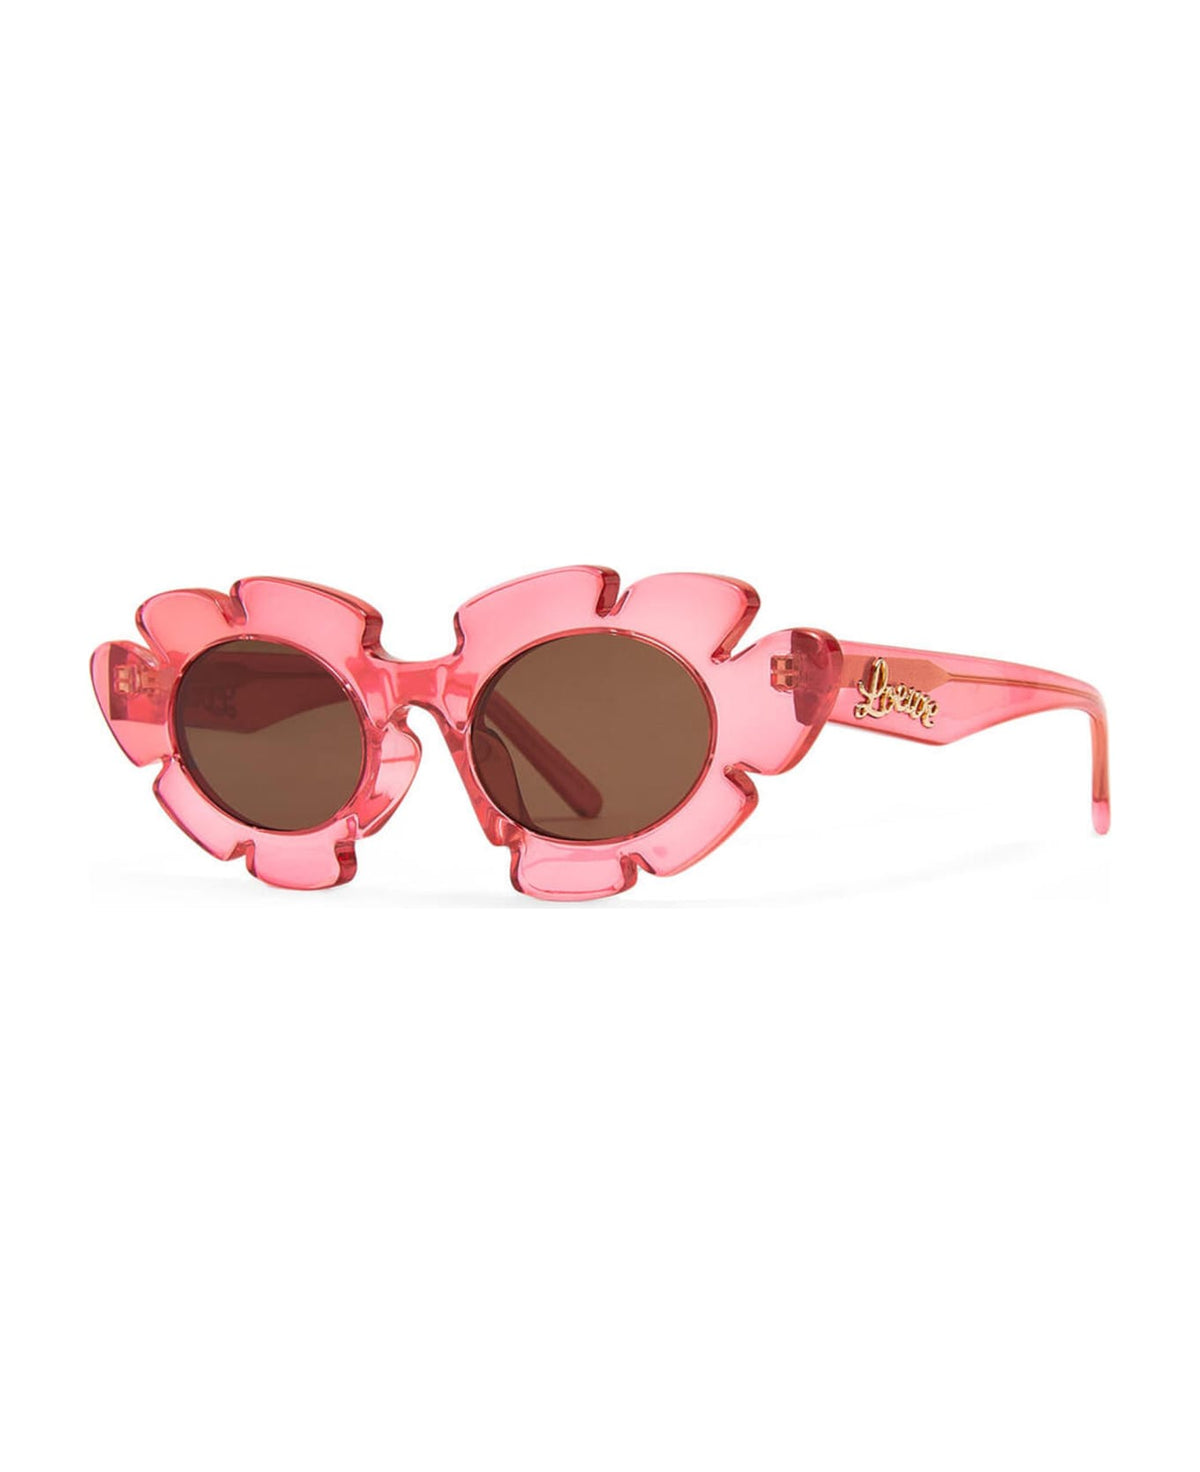 Lw40088u - Coral Pink Sunglasses